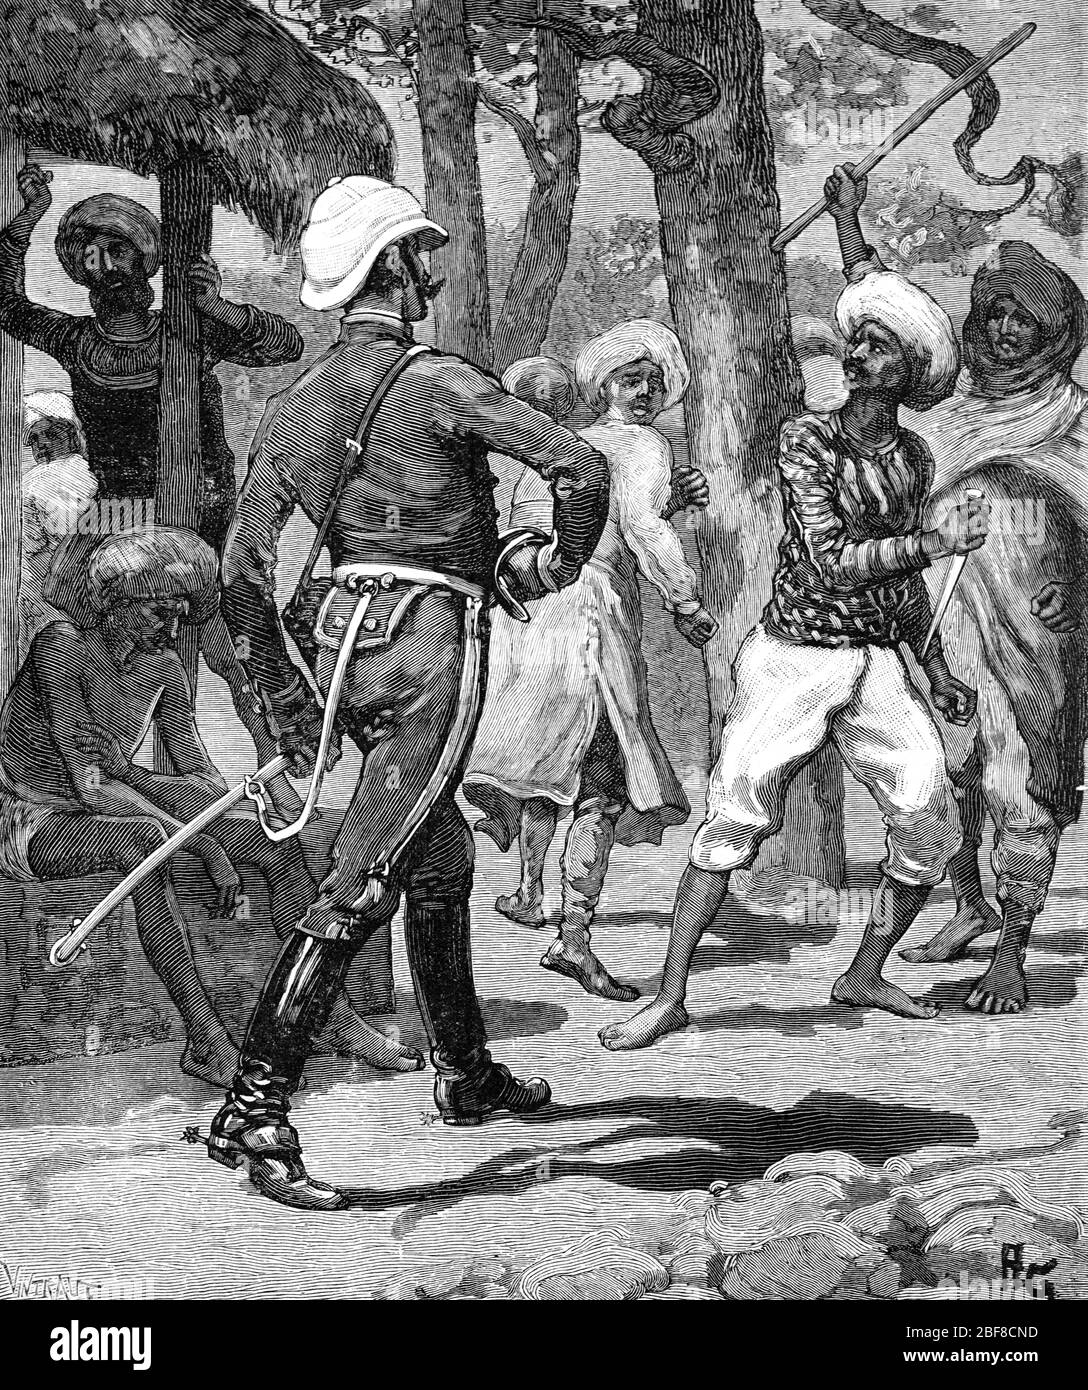 L'officier de l'armée britannique, le colonel O'Farrick, affronte les Indiens indiens en Inde britannique. Vintage ou ancienne illustration ou gravure 1889 Banque D'Images